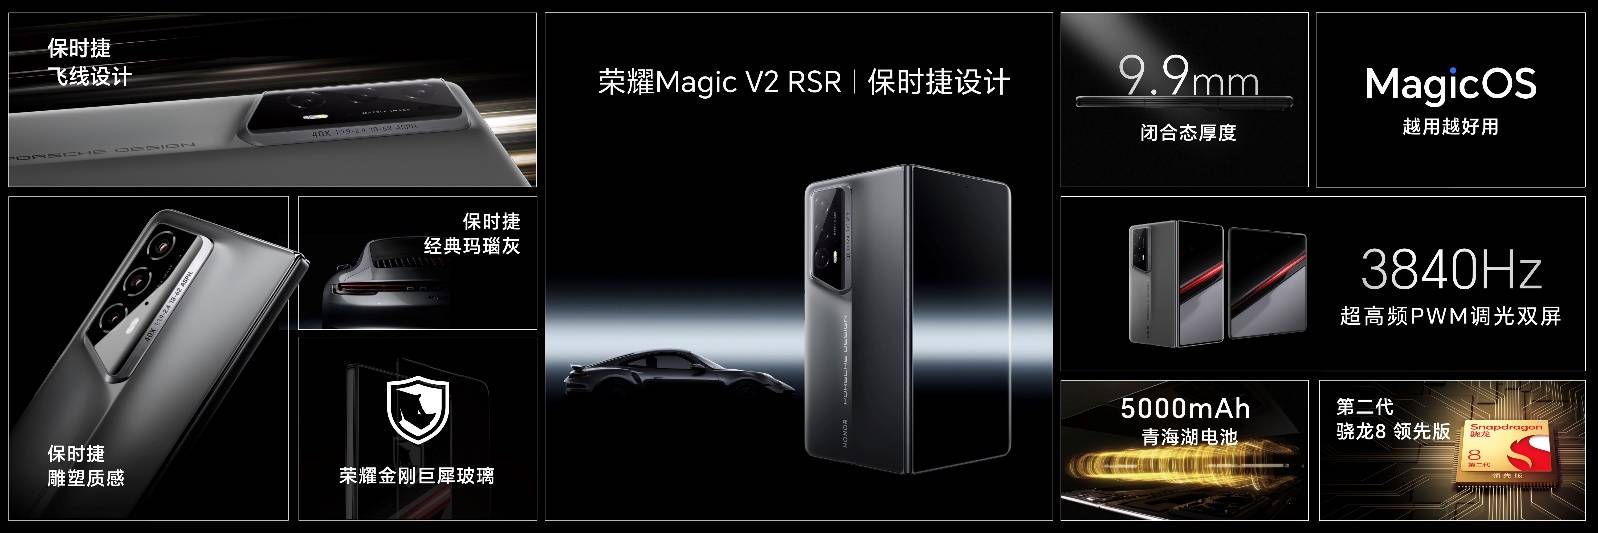 荣耀Magic6系列旗舰手机发布，带来六大引领技术领创未来-锋巢网